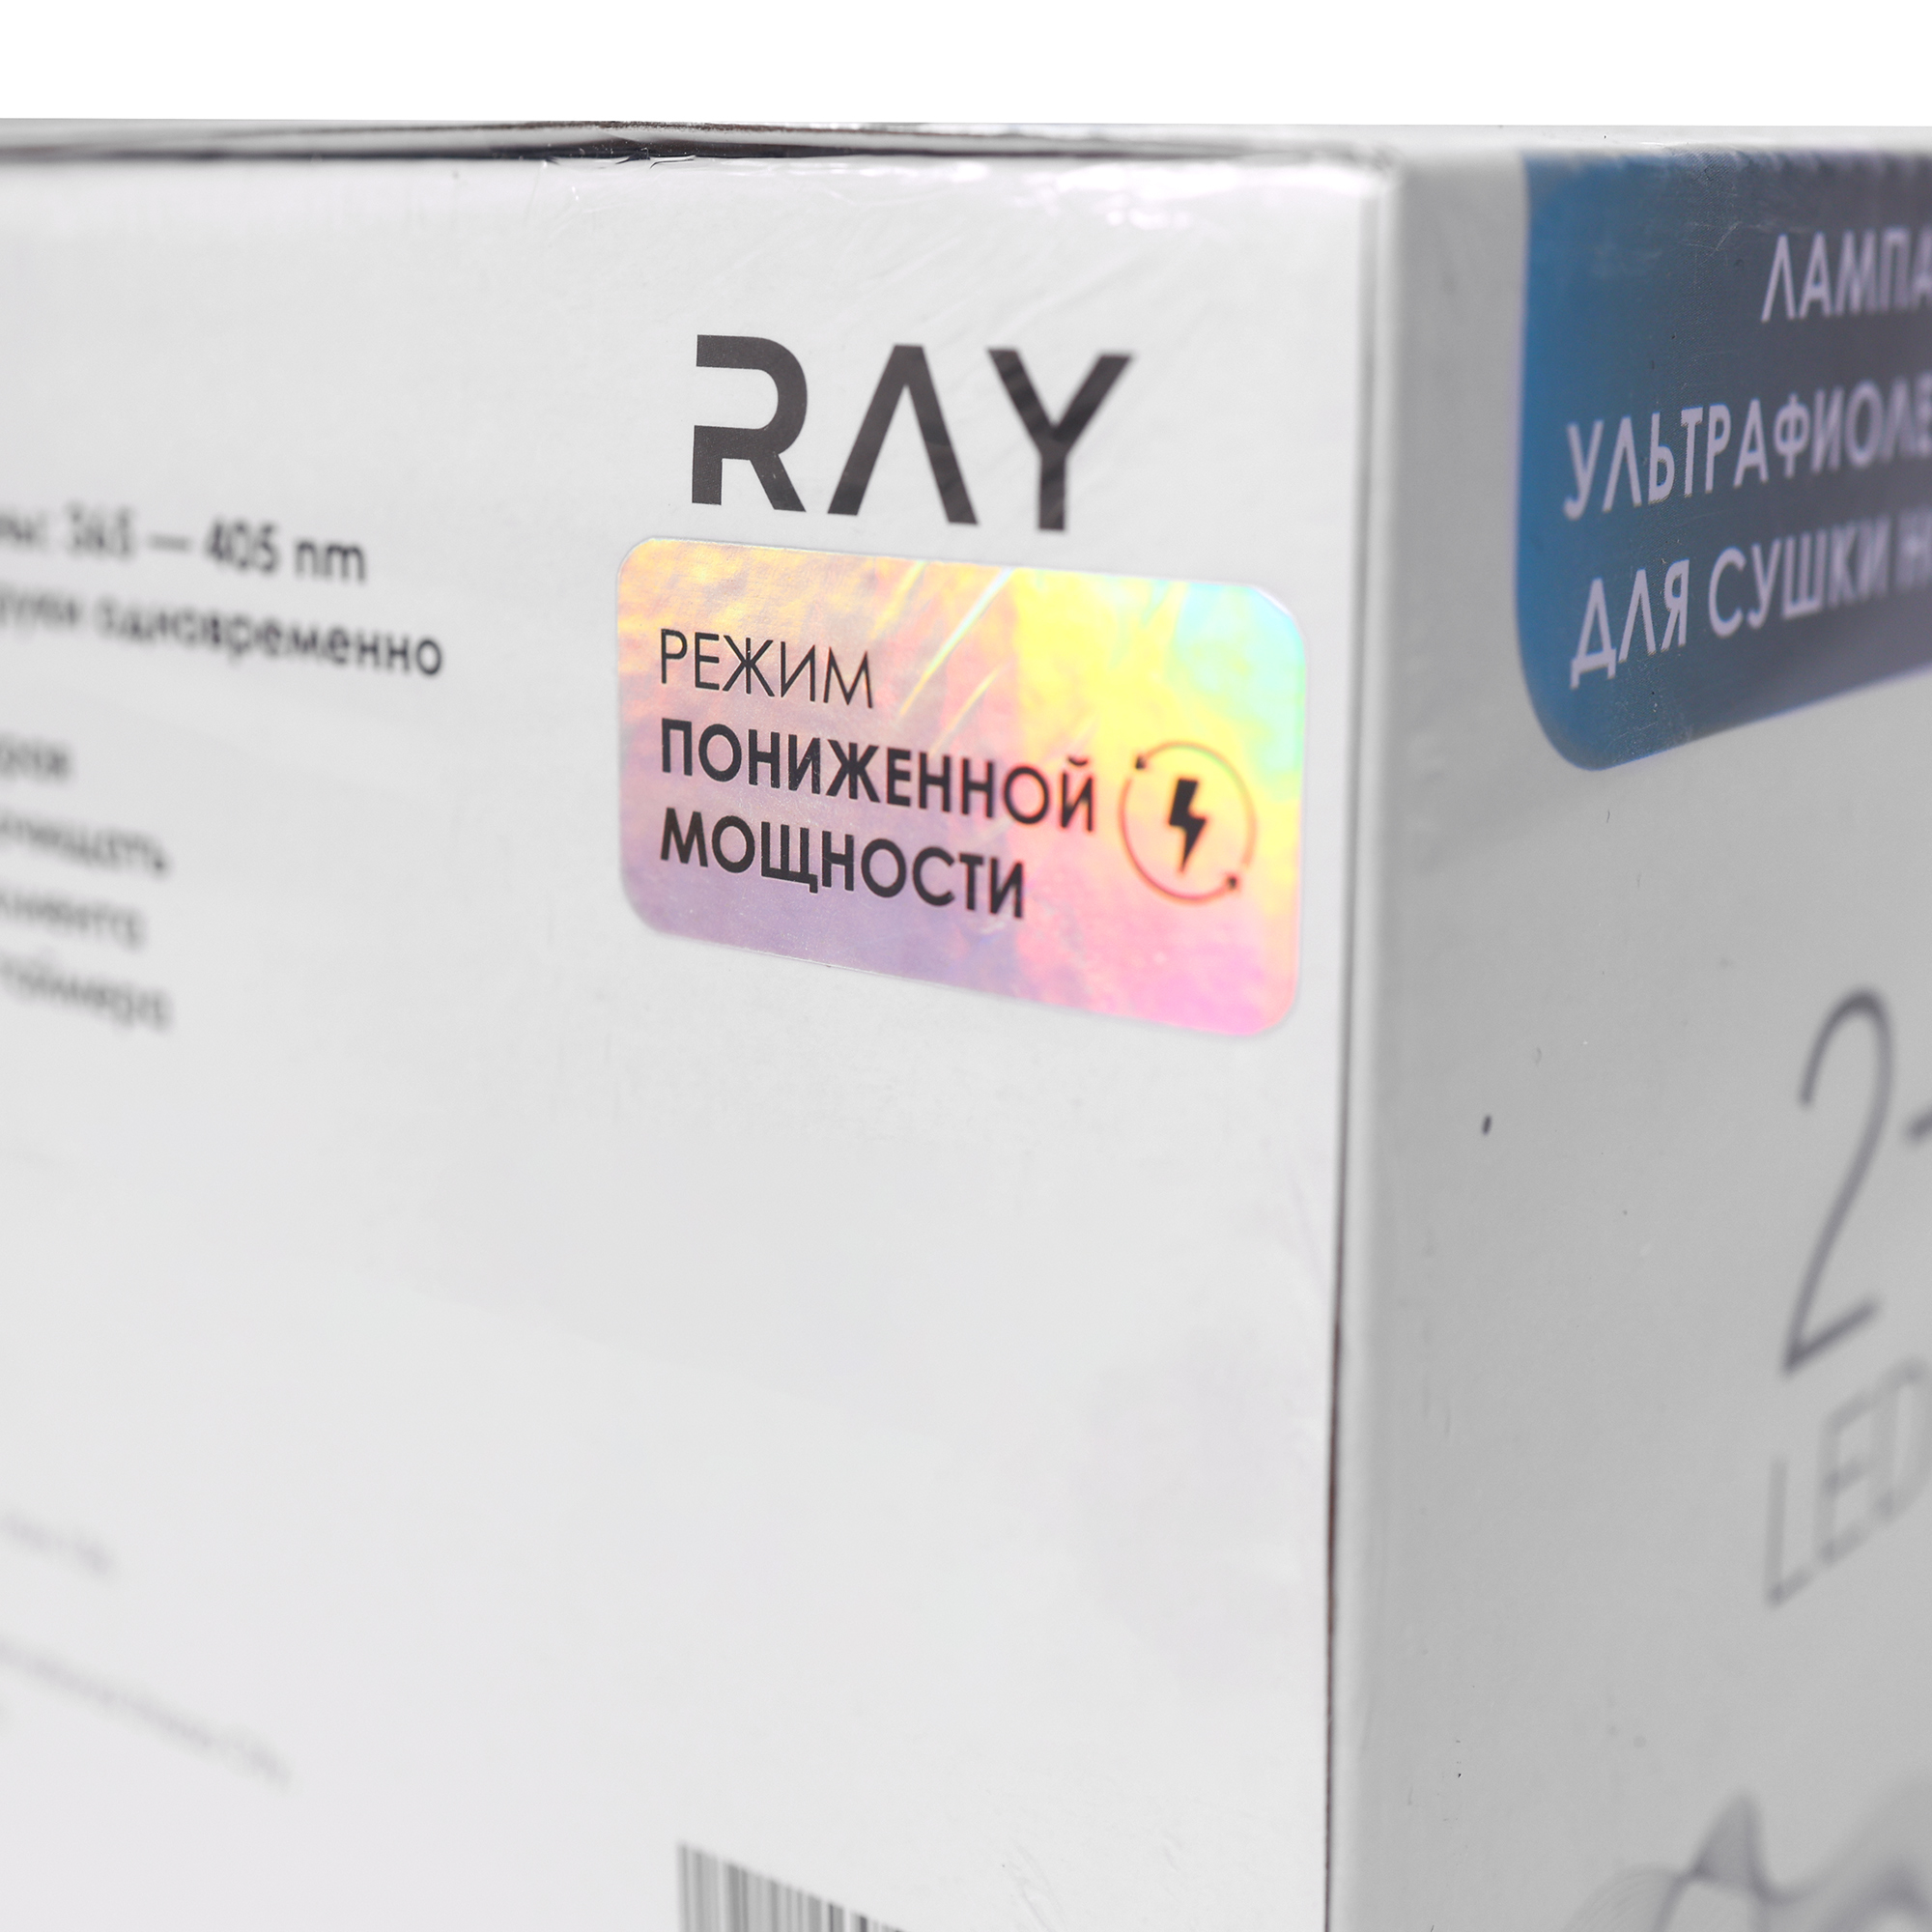 Лампа для сушки ногтей RAY Master RAY с режимом пониженной мощности купить в интернет магазине NailService.ru - Москва